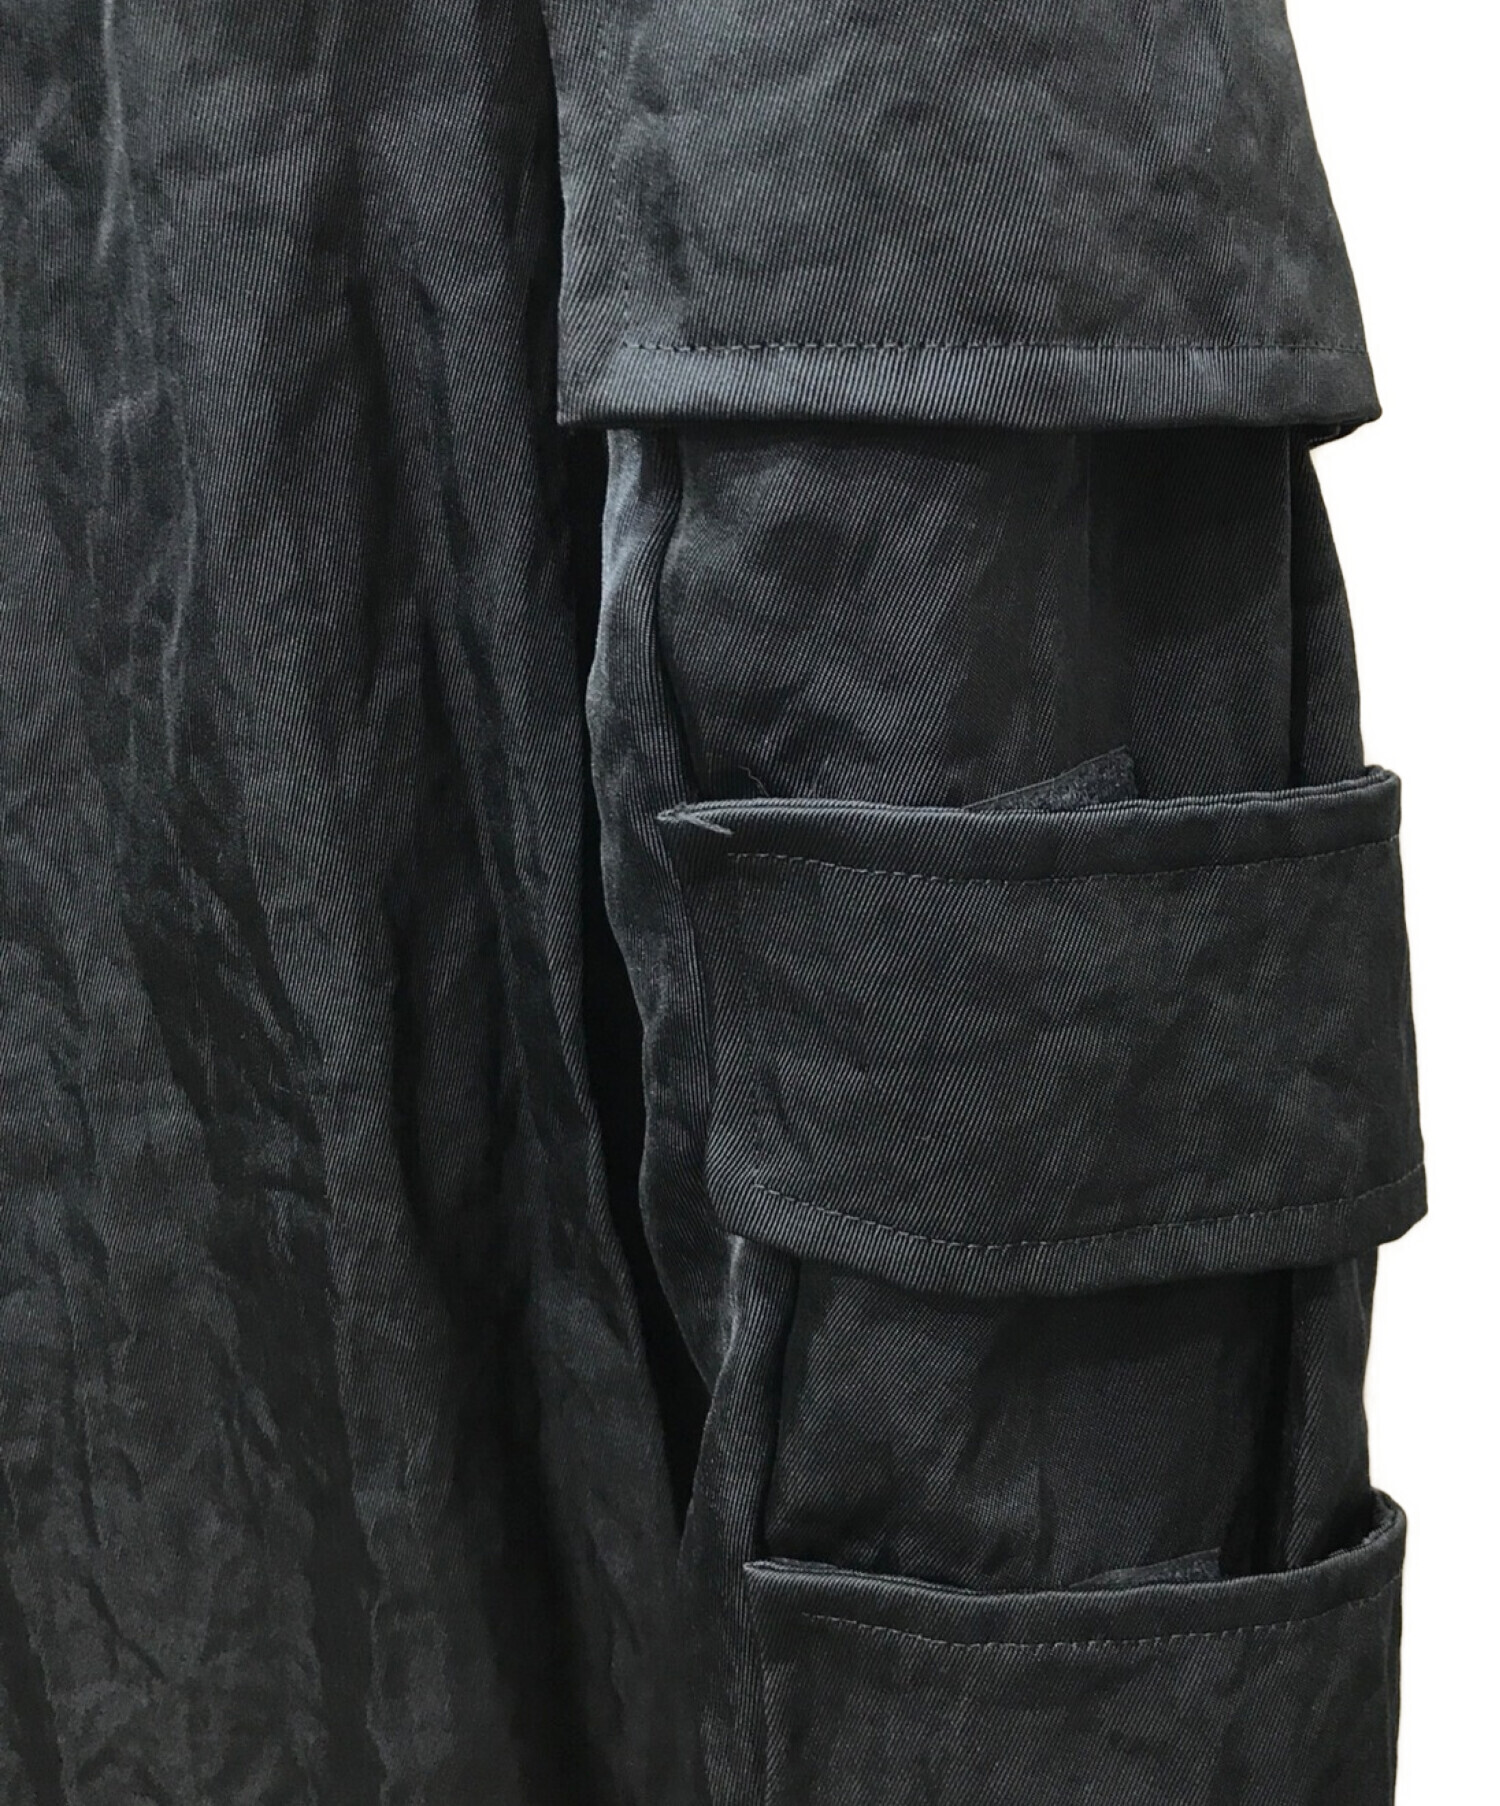 FOTUS (フェトウス) フロントバッグナイロンギミックコート ブラック サイズ:S